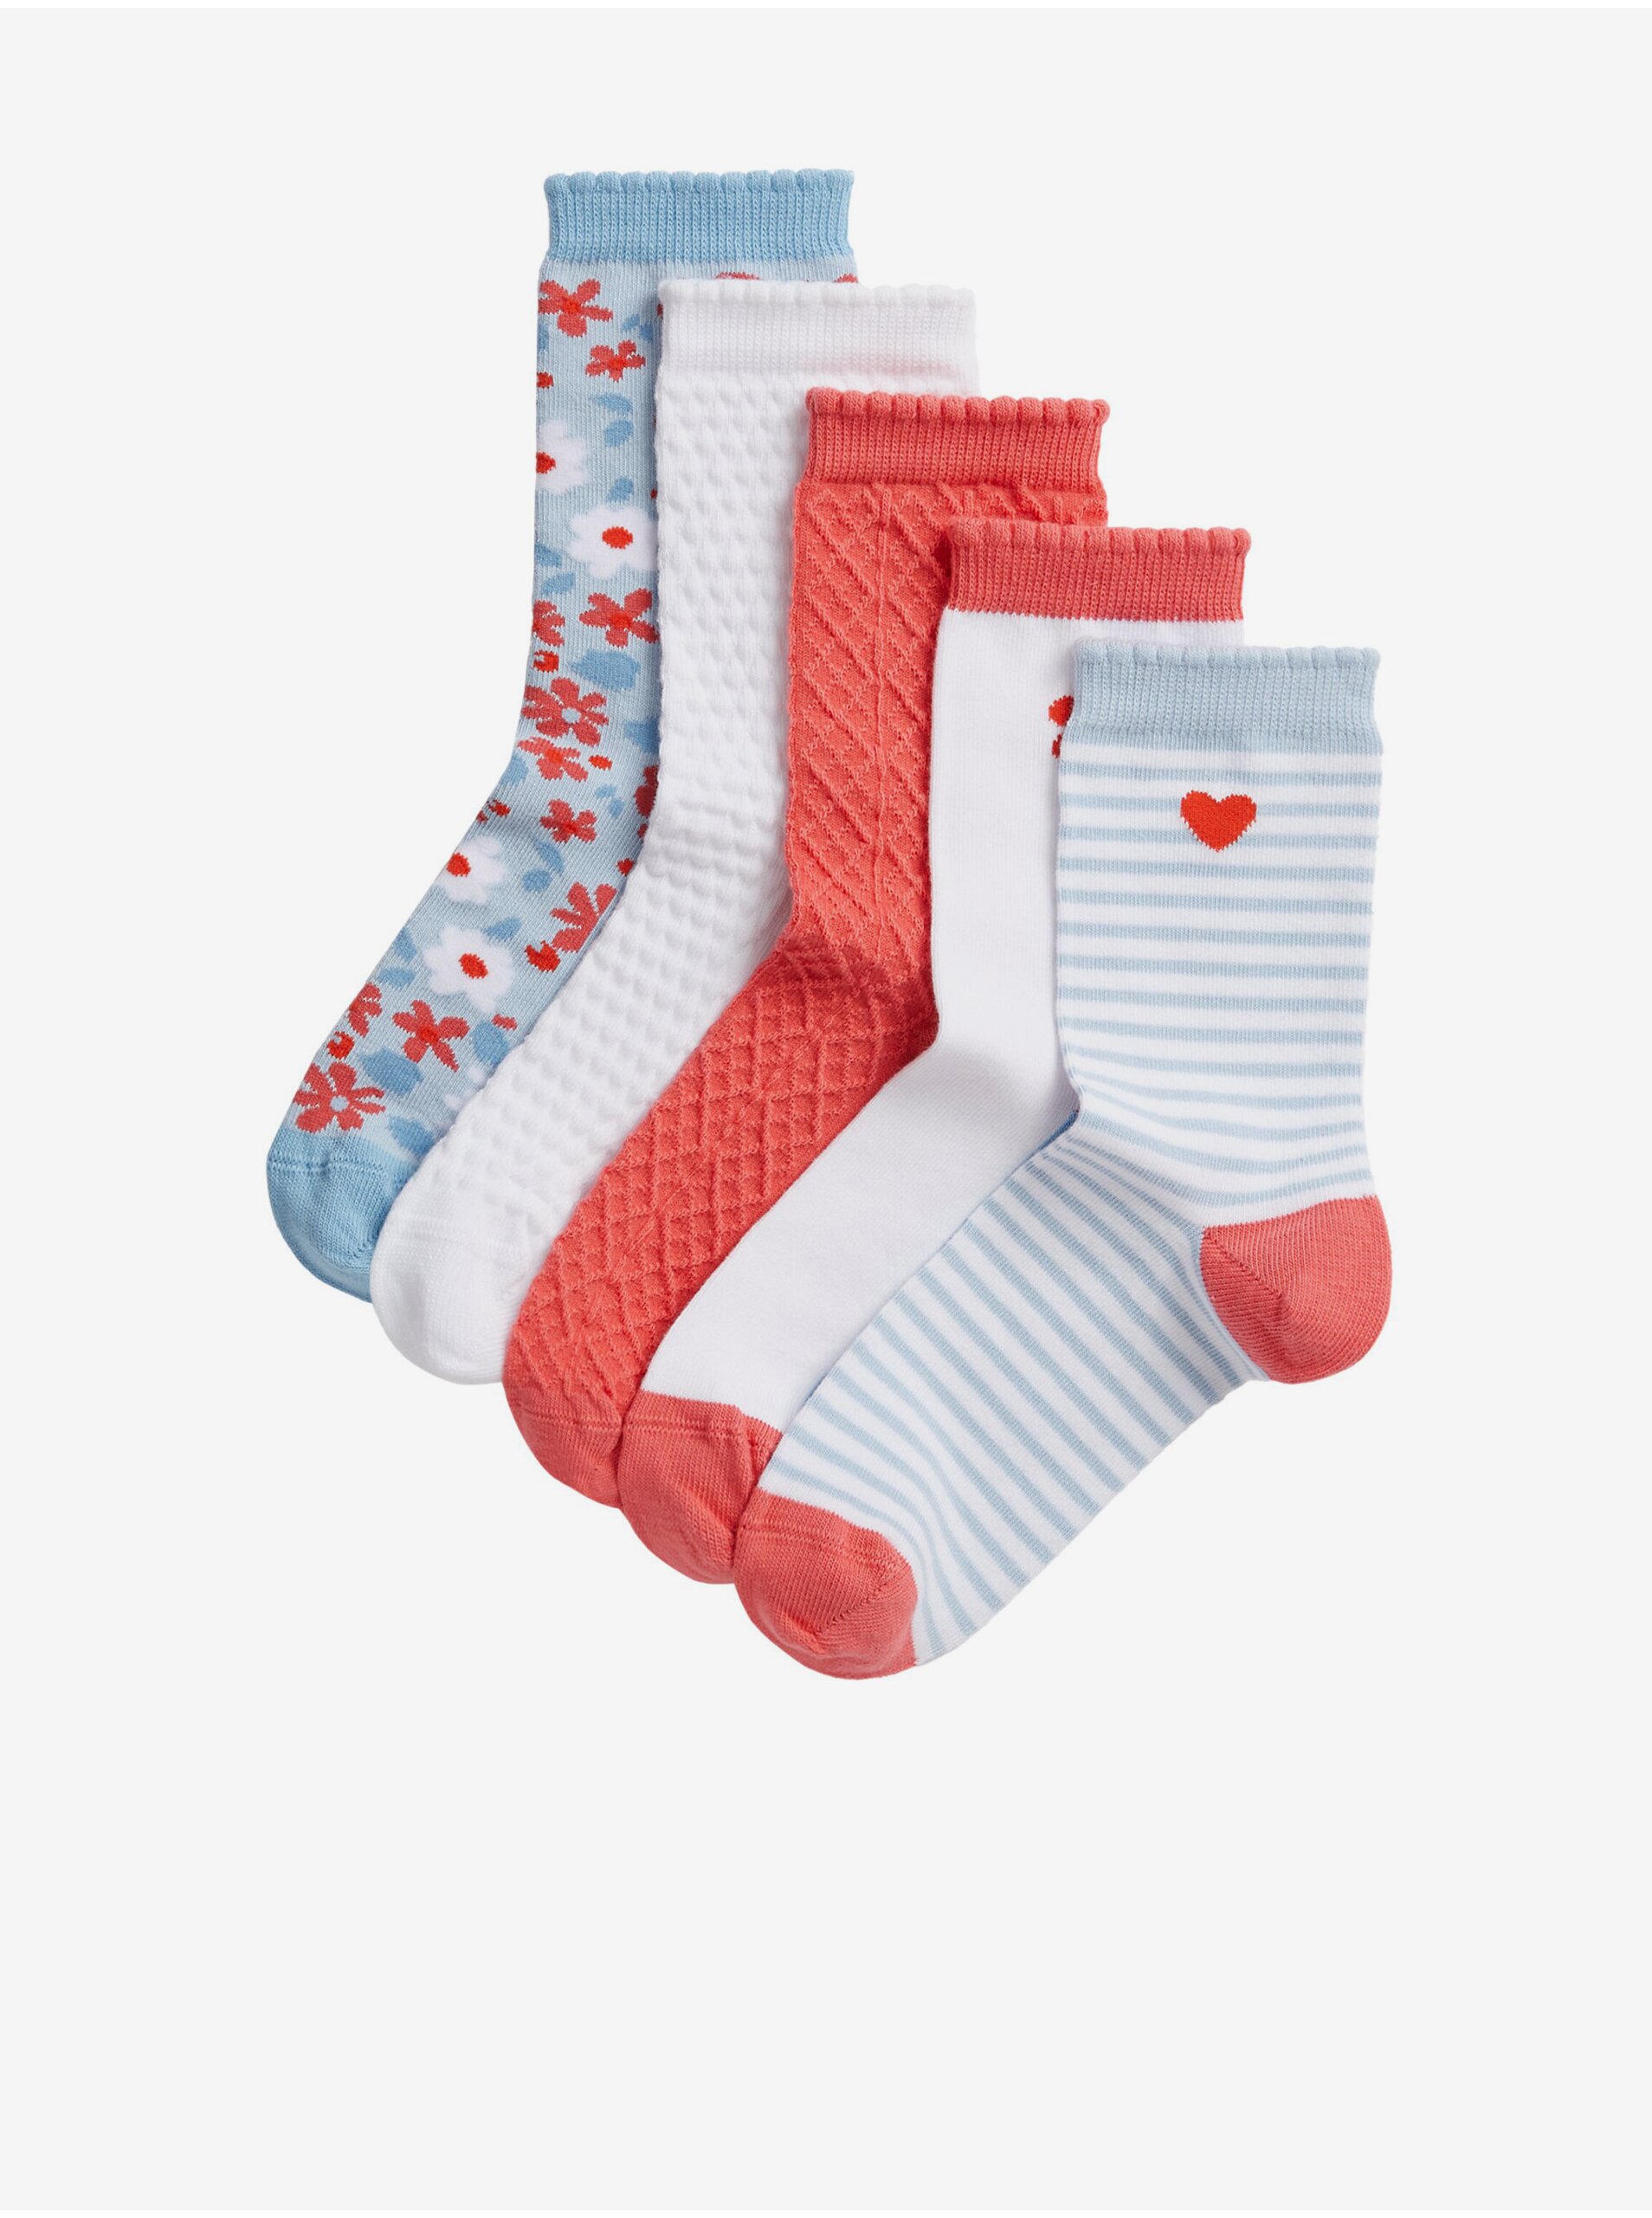 E-shop Sada pěti párů holčičích vzorovaných ponožek v červené, bílé, šedé a světle modré barvě Marks & Spencer